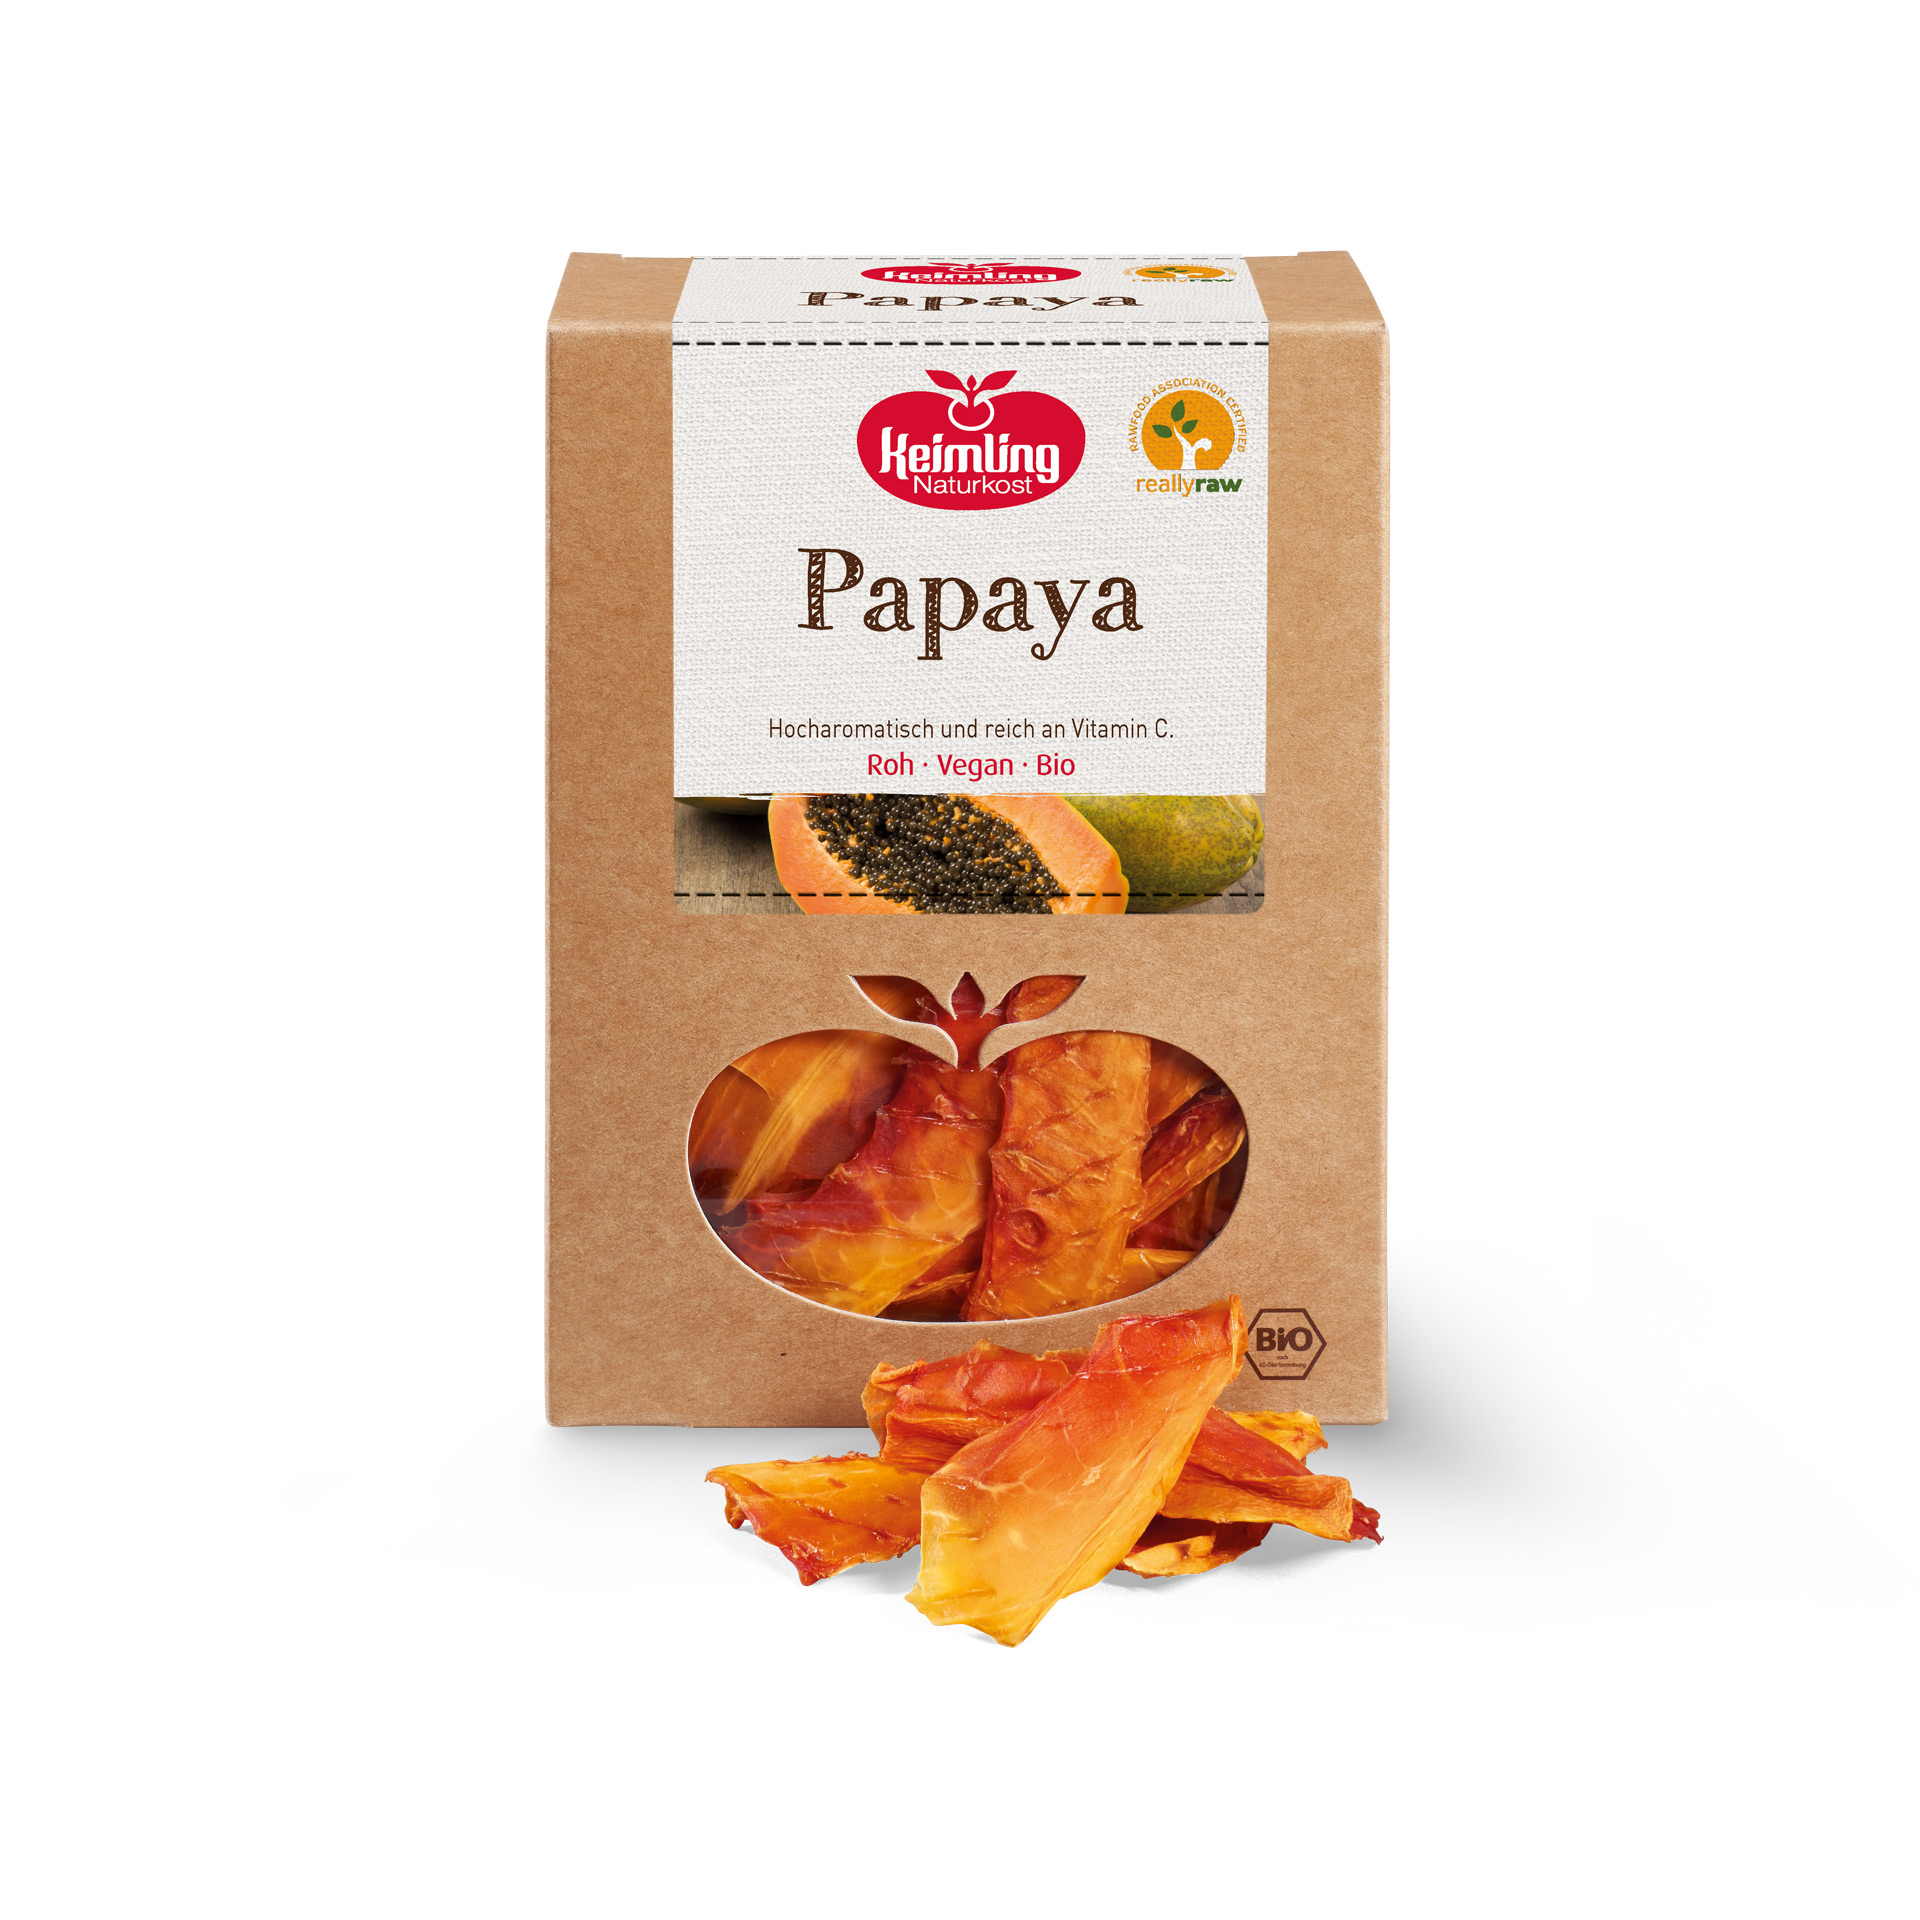 Rohkost Papaya von Keimling Naturkost really raw zertifiziert